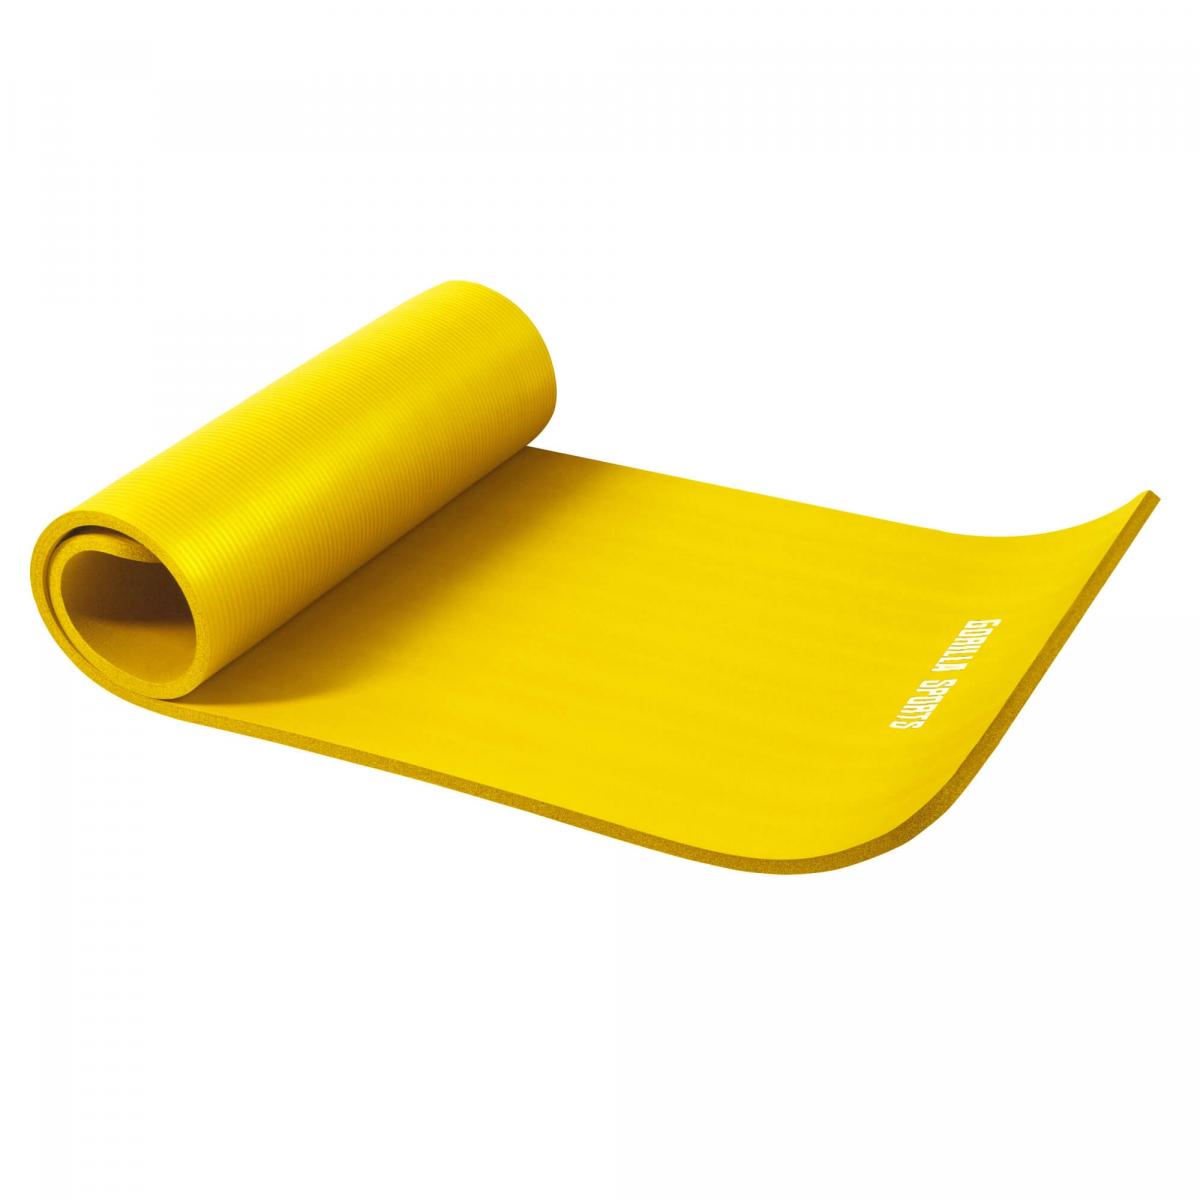 Petit tapis de yoga en mousse - 190 x 60 x 1,5 cm (Yoga - Pilates - sport Ã domicile) Jaune